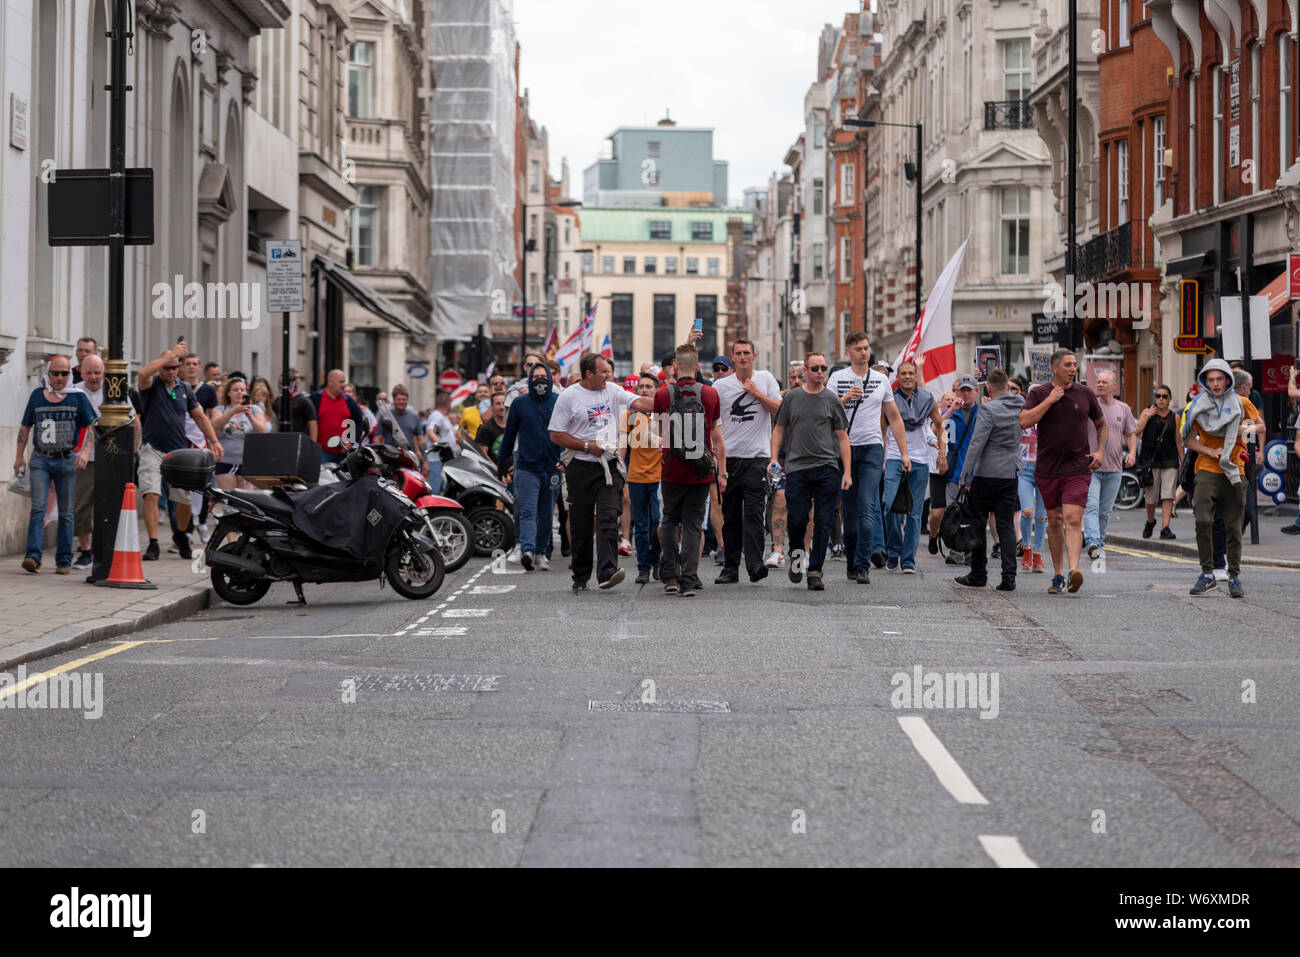 Un rally está teniendo lugar en Londres para protestar contra el encarcelamiento de Stephen Yaxley-Lennon, quien va por el nombre de Tommy Robinson, y está cumpliendo una pena de cárcel en Belmarsh prisión tras haber sido declarado culpable de desacato al tribunal Foto de stock